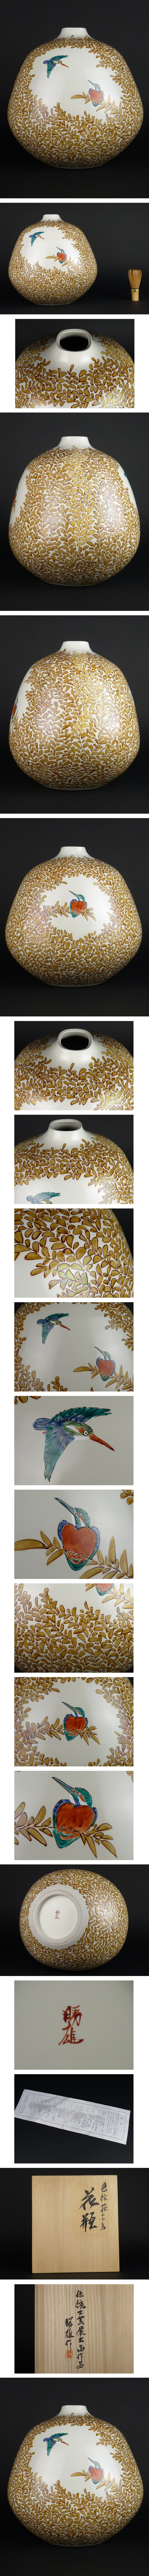 【得価】三浦勝雄「色絵 萩に小鳥 花瓶」共箱 高さ 約32㎝ 幅 約30㎝ 九谷焼 花器 花器、壷